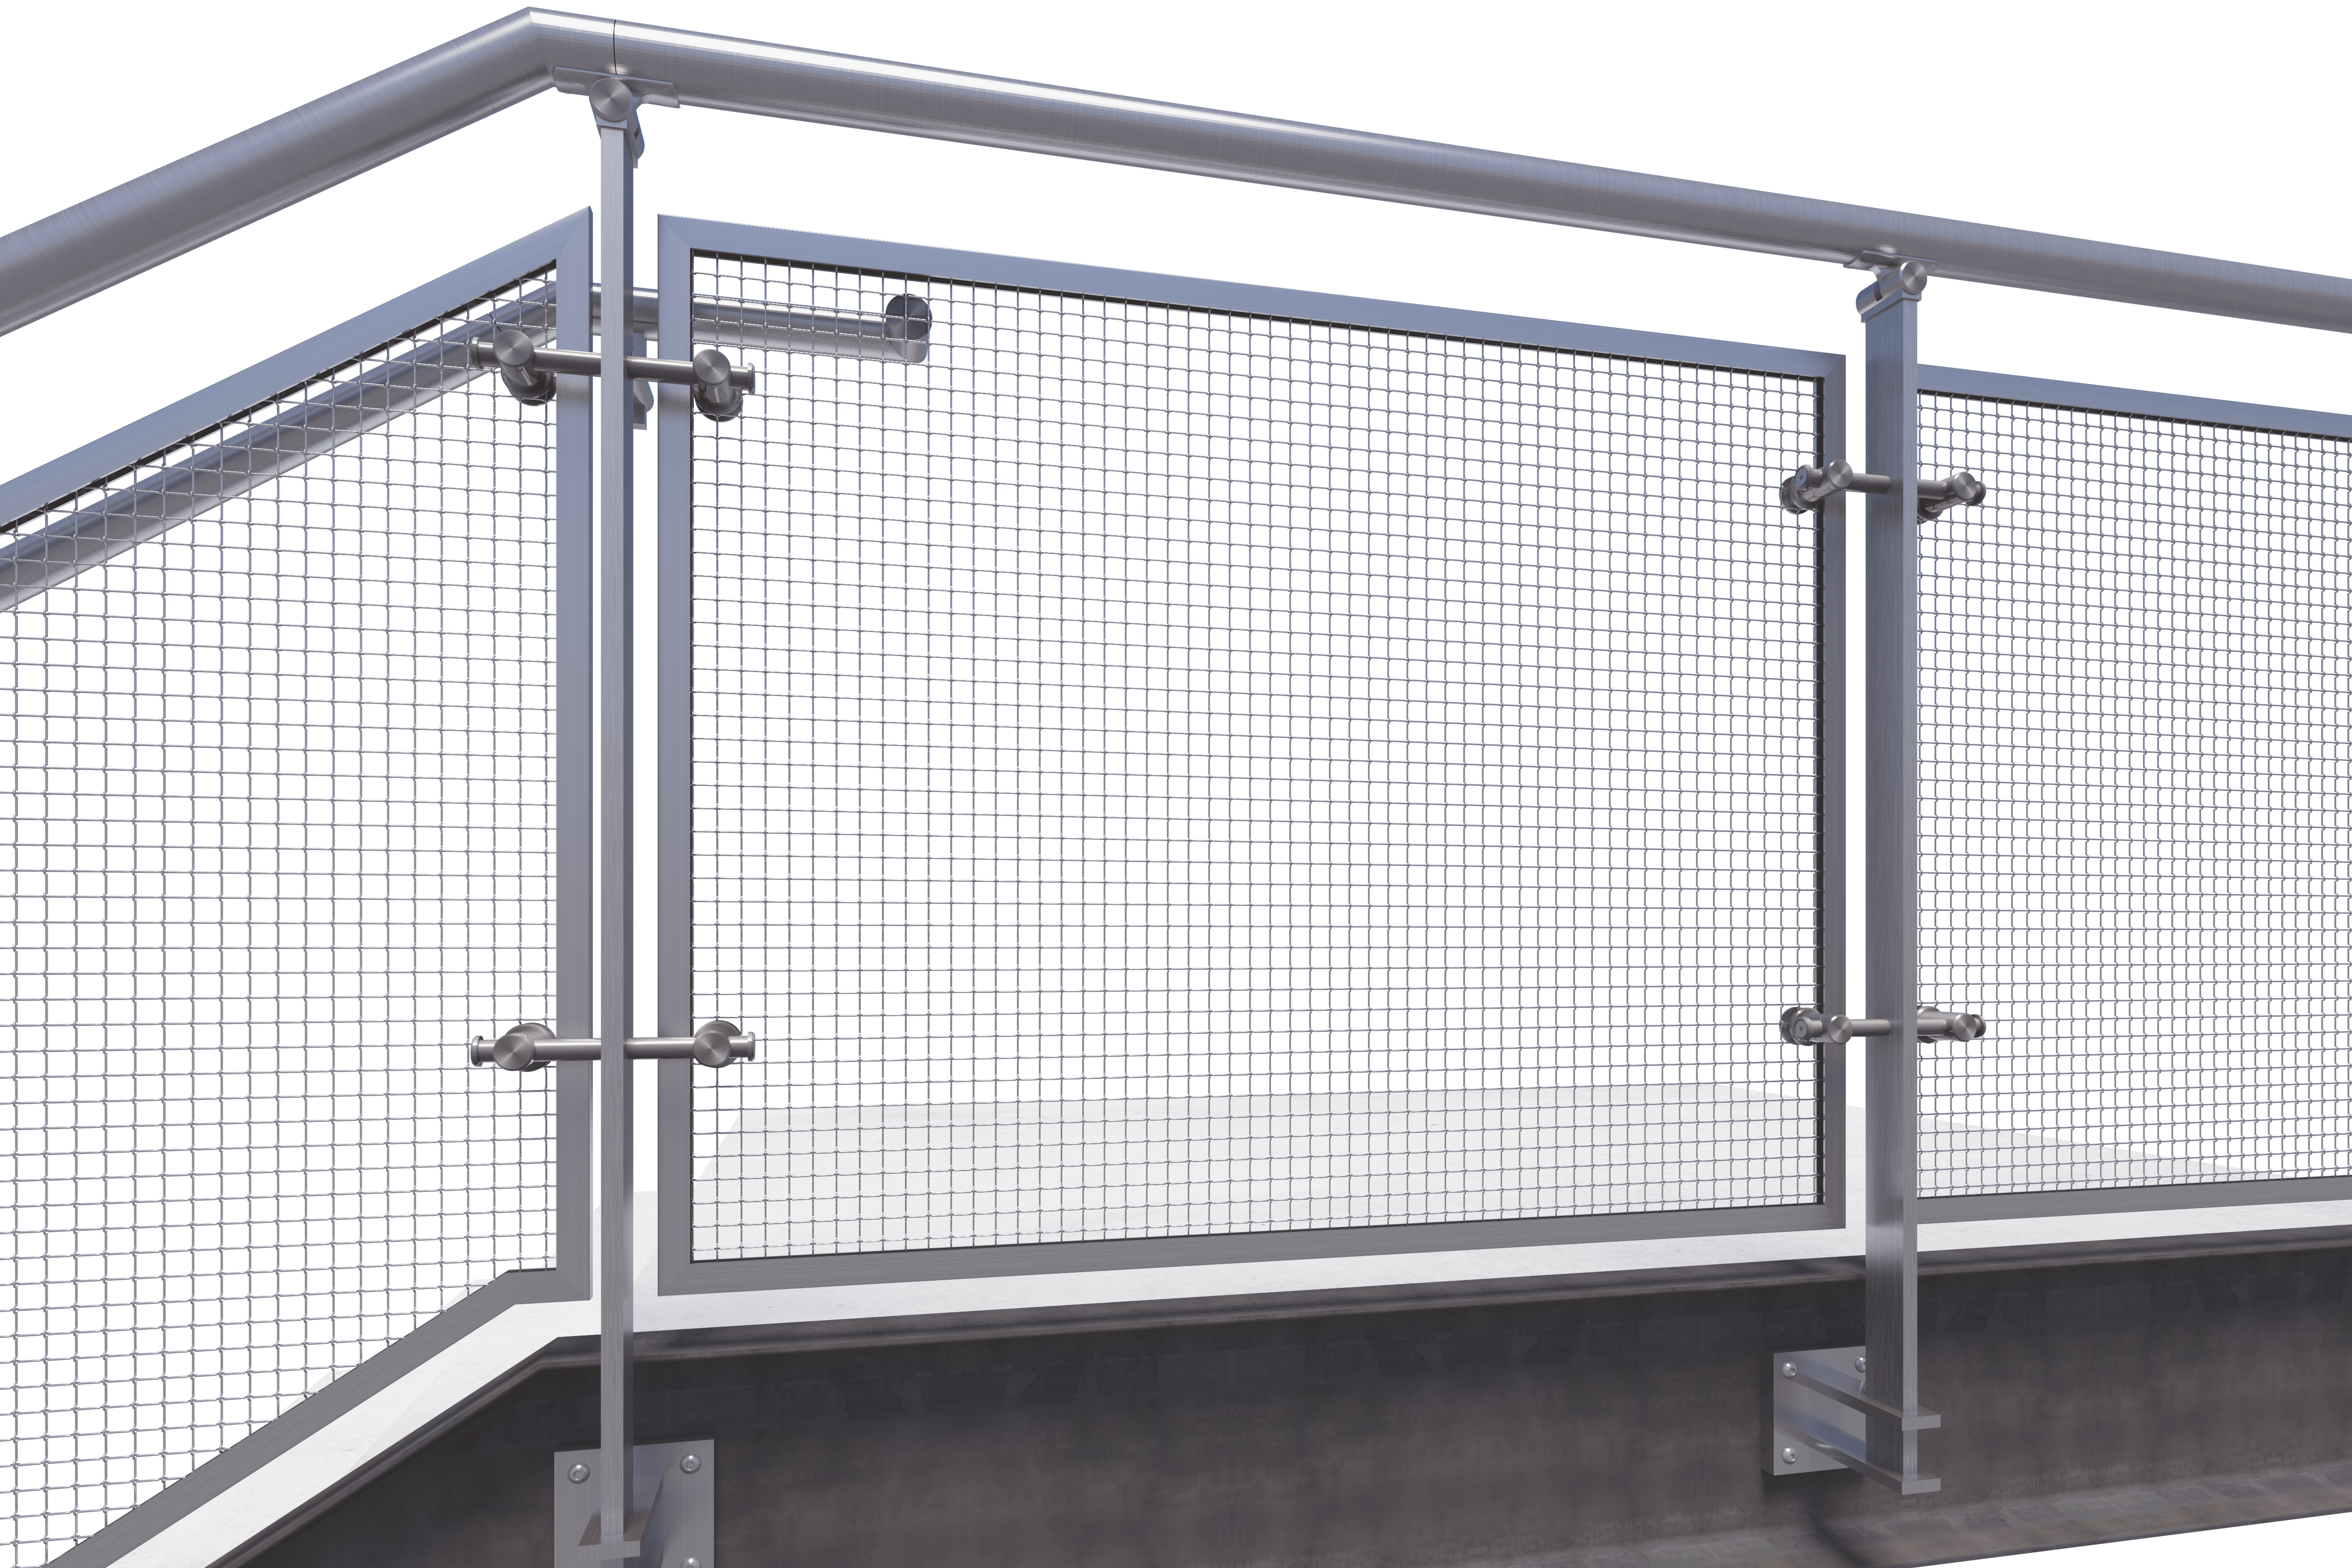 CIRCA® Wire Guardrail System, Viva Railings